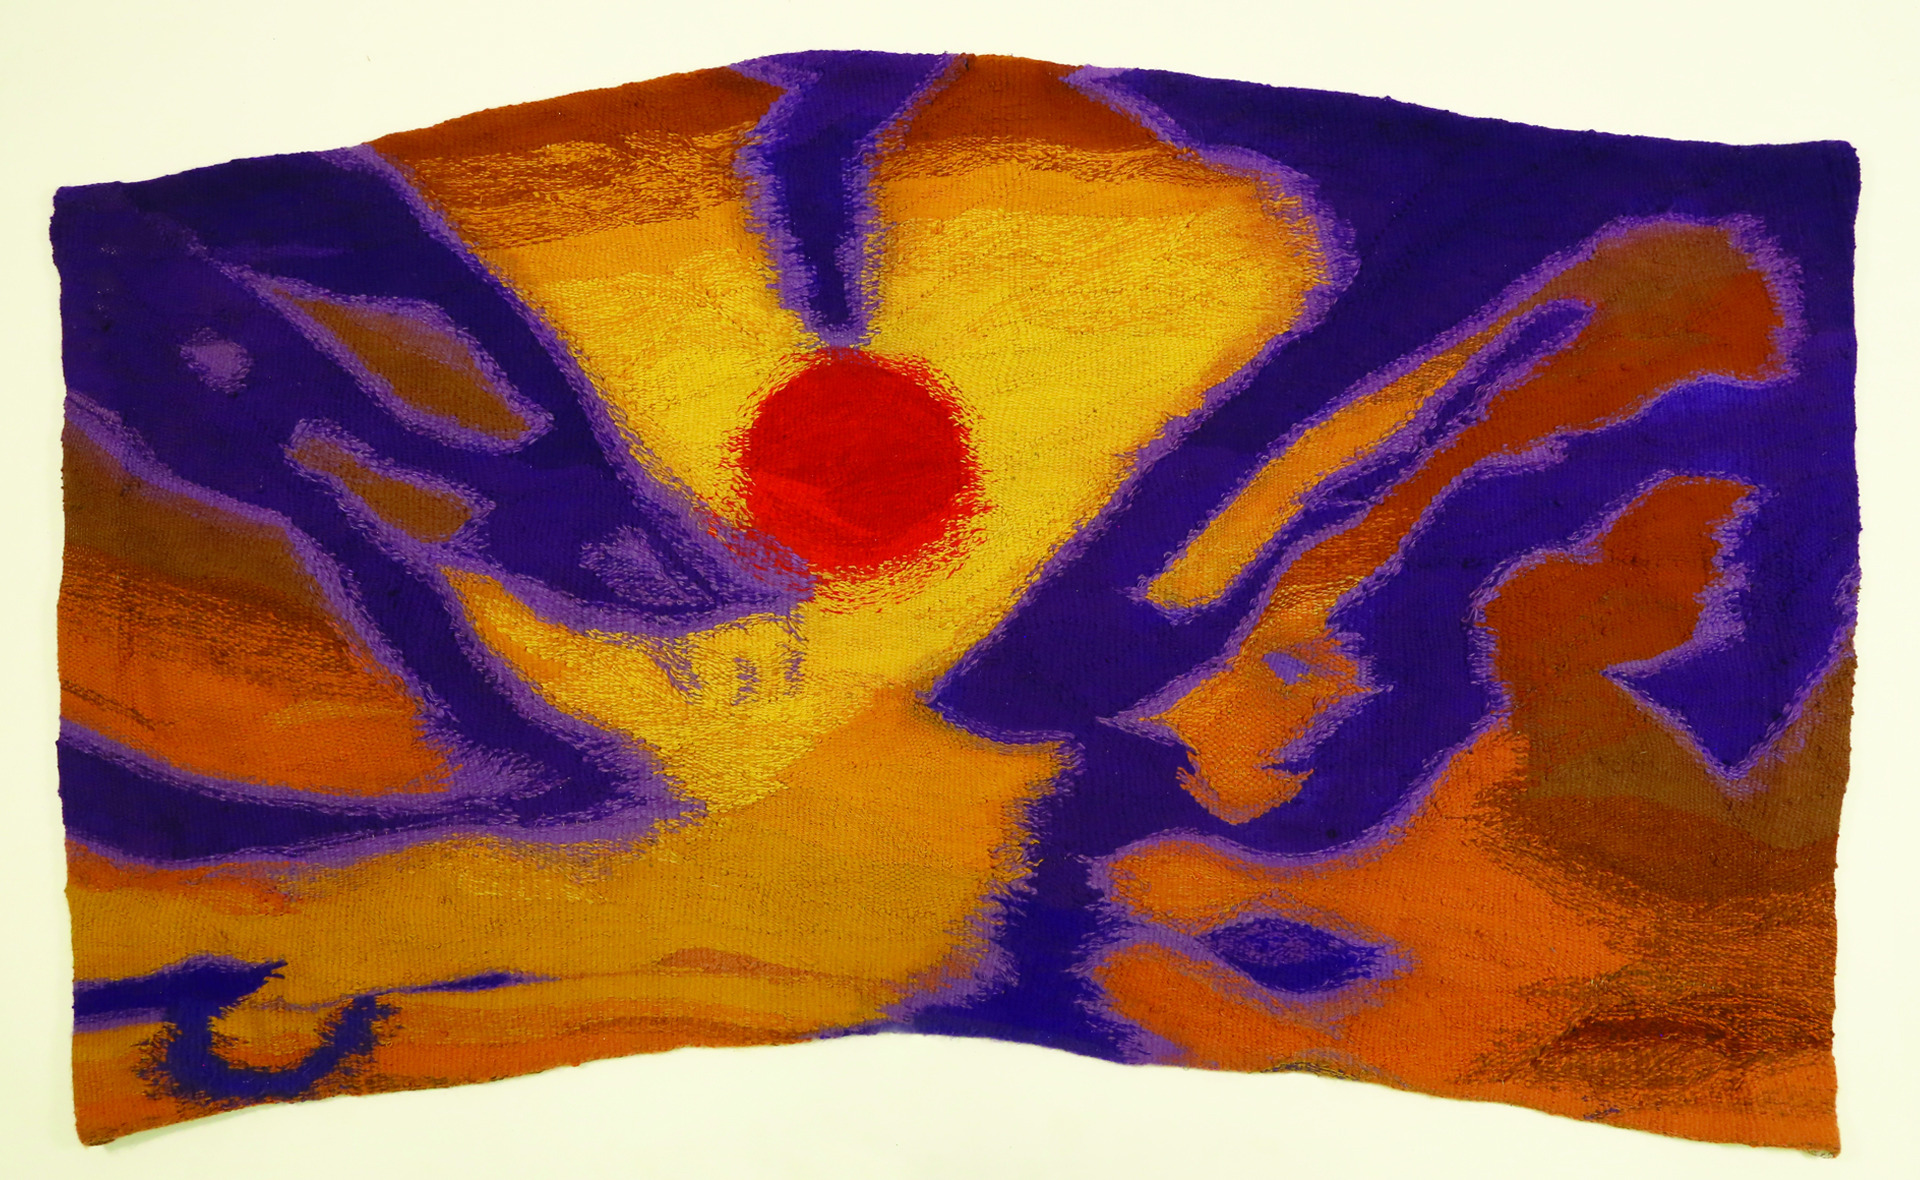  Zdjęcie przedstawia tkaninę w nieregularnym formacie. Górna i dolna krawędź jest wygięta w łuk. W centrum tkaniny znajduje się czerwony owalny kształt, otoczony abstrakcyjnymi formami koloru fioletowego na pomarańczowym tle.